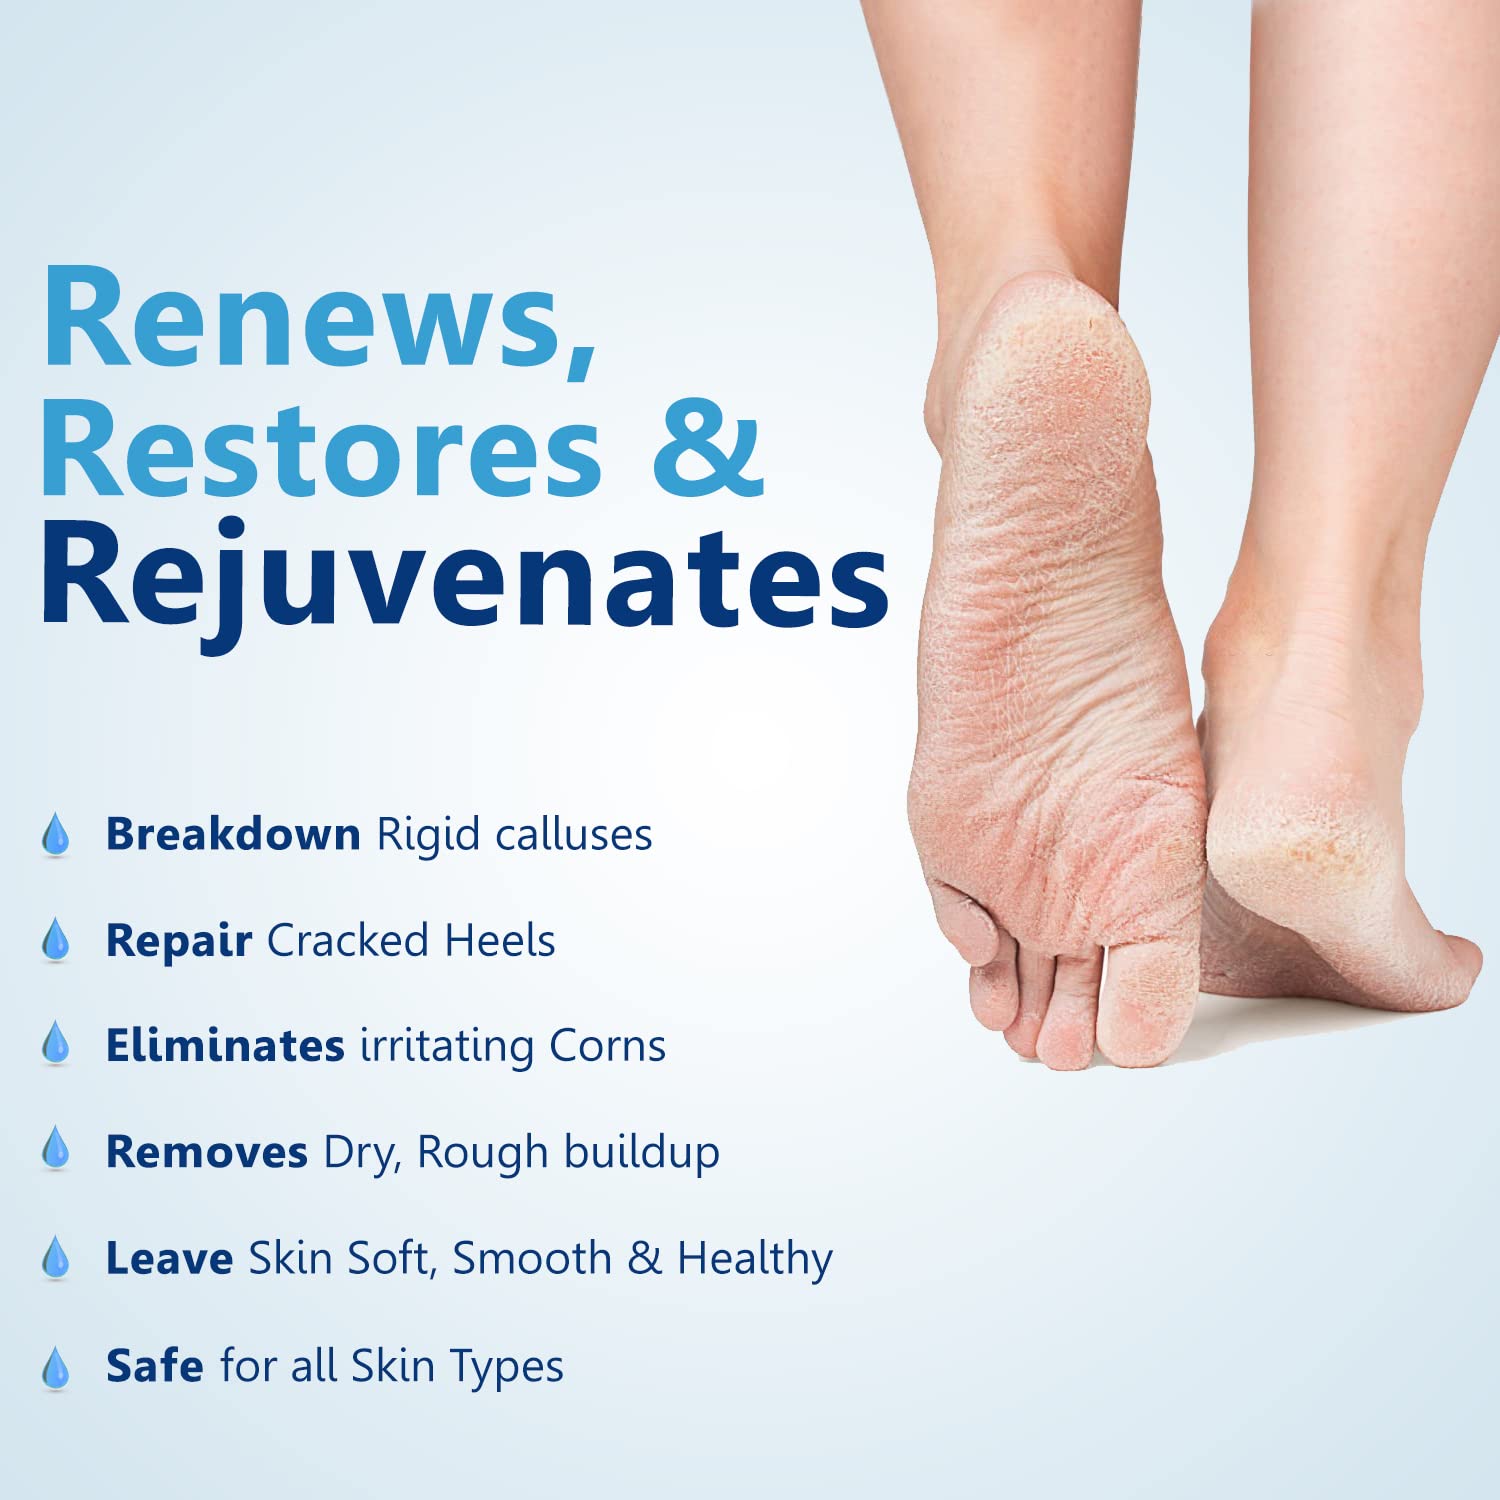 Remedies for Repairing Cracked Heels